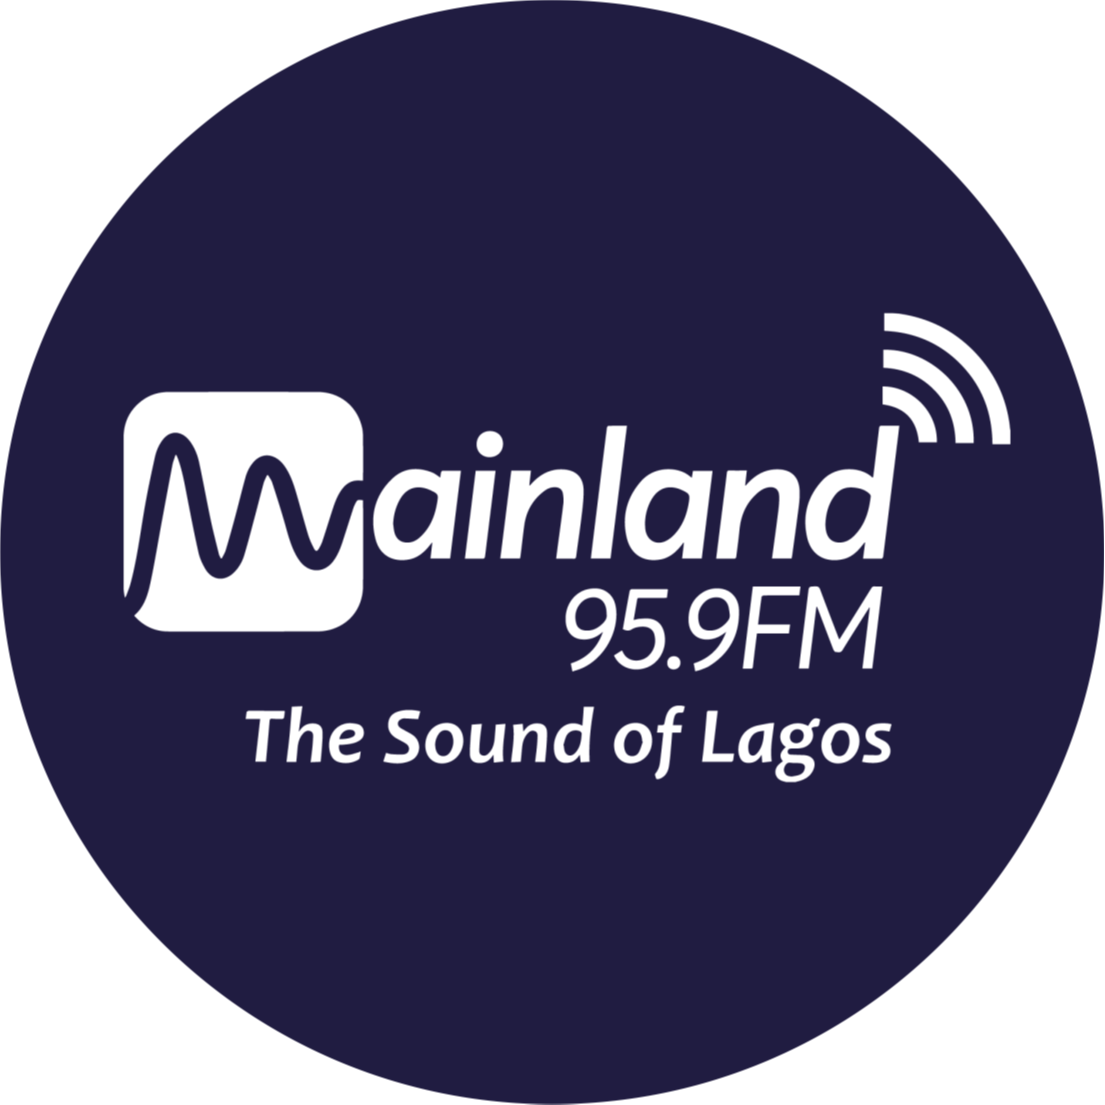 Mainland 95.9 FM